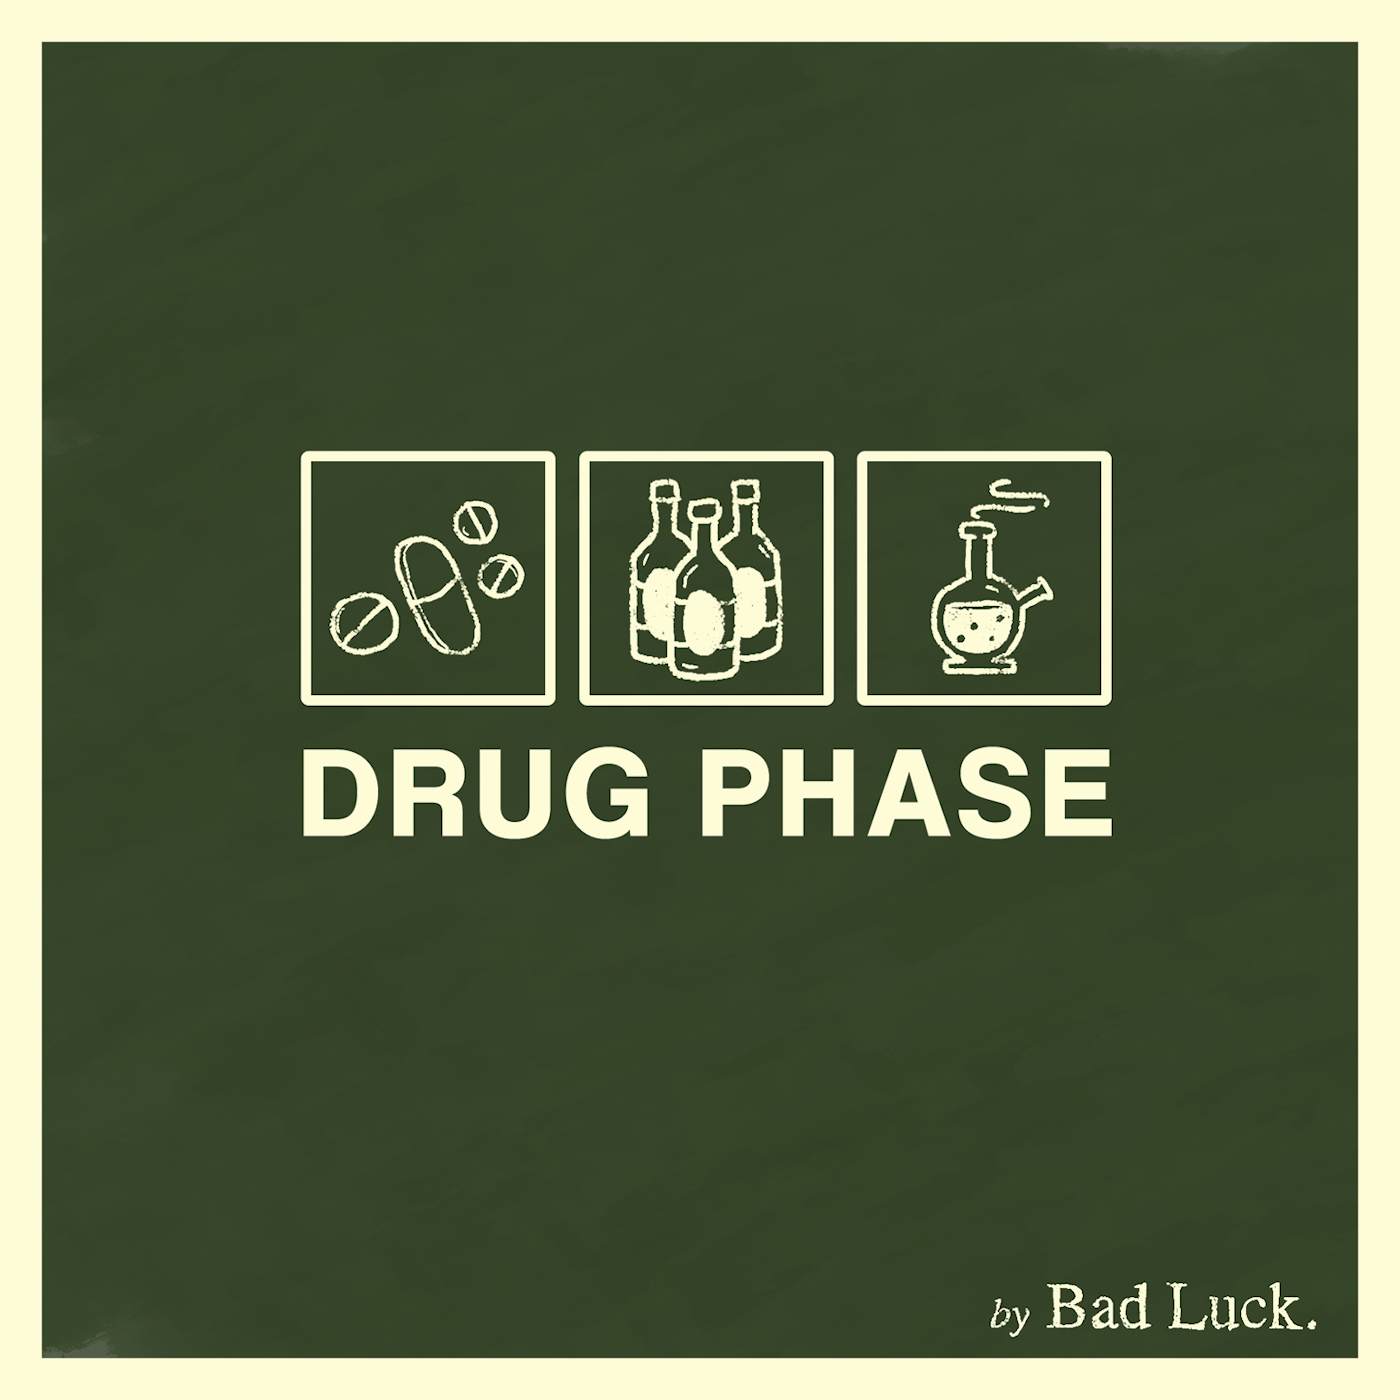 Bad Luck DRUG PHASE CD